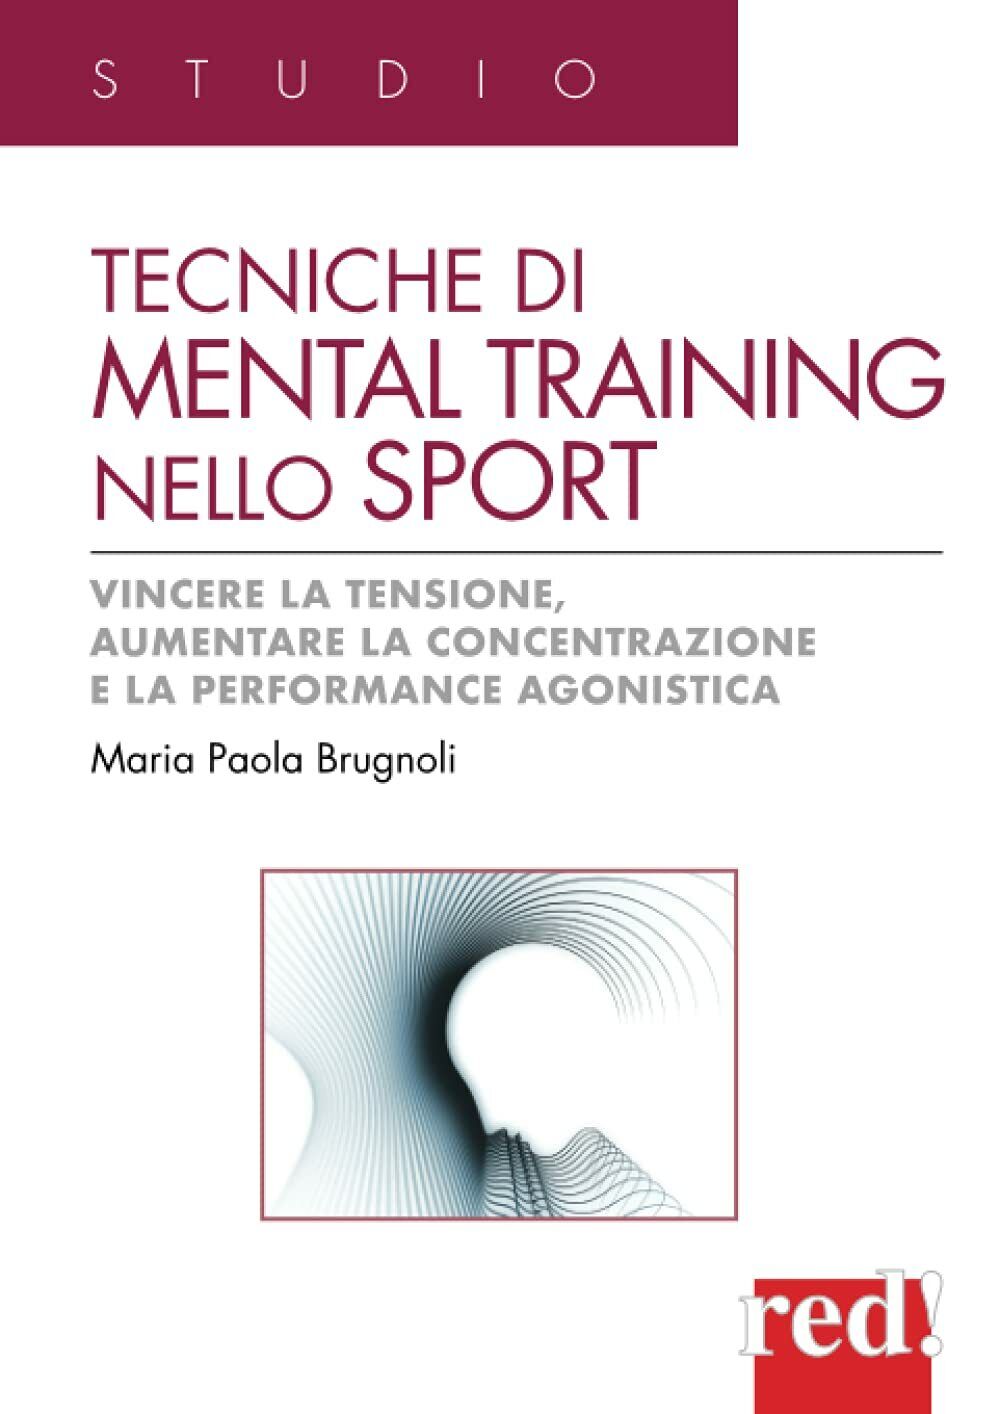 Tecniche di mental training nello sport-Maria Paola Brugnoli-Red Edizioni, 2012 libro usato